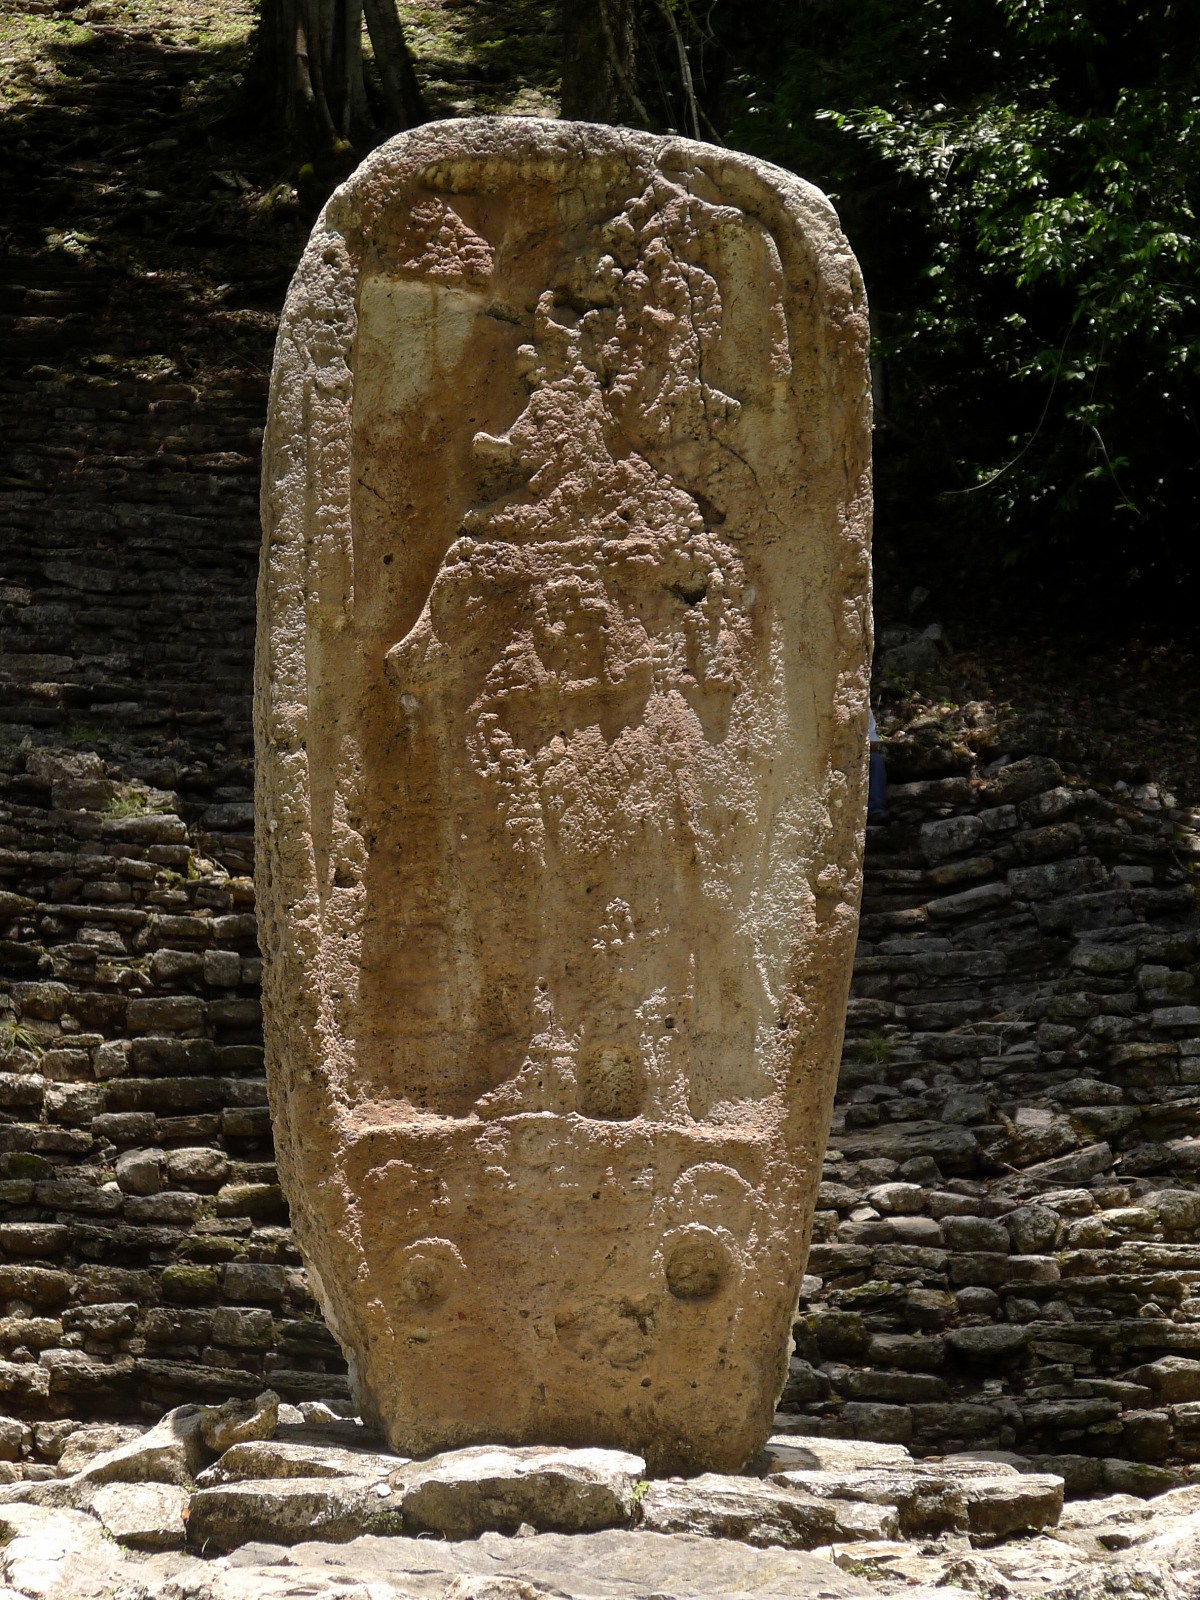  mexiko chiapas maya yaxchilan treppe gebaeude 33 stele